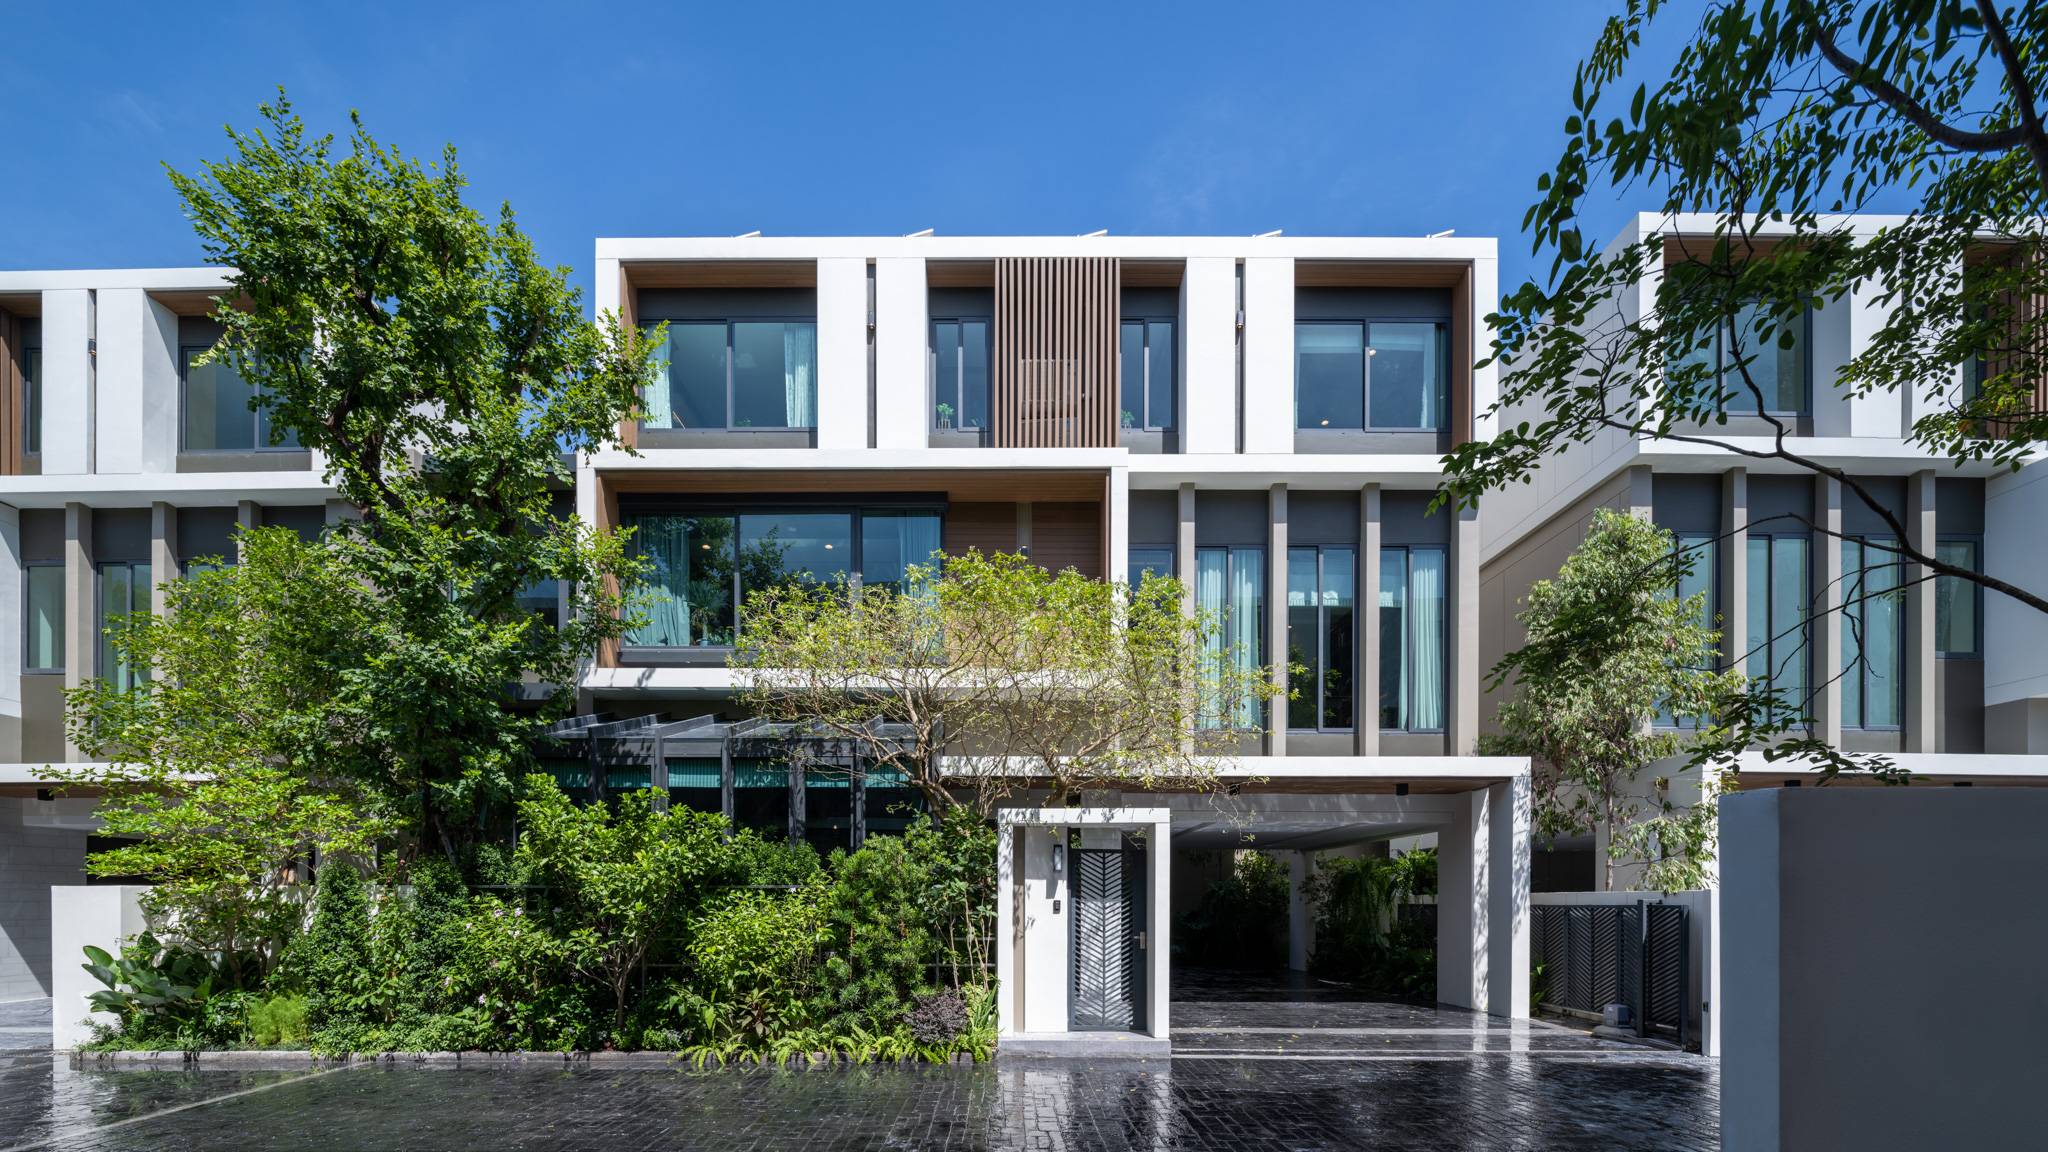 บ้าน iNine Greenhouse คือตัวแทนการออกแบบ "บ้านในเมืองของคนยุคใหม่"